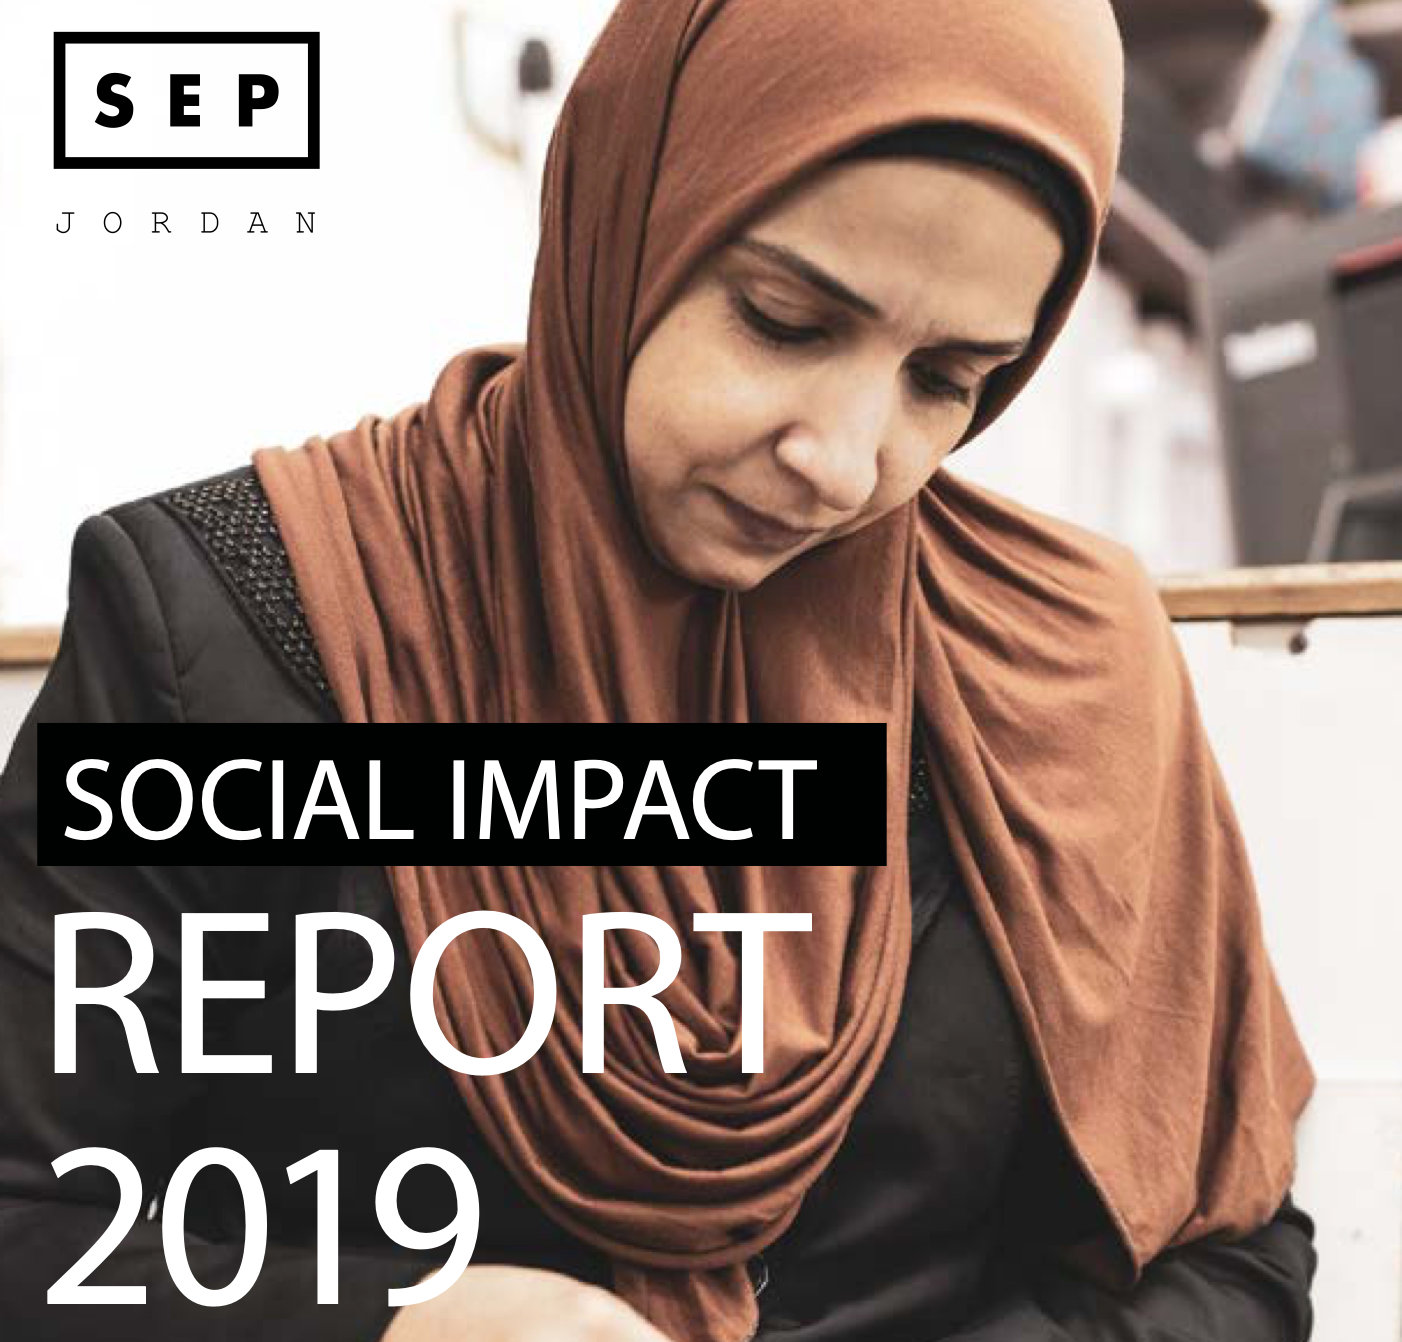 SEP Jordan 2019 Social Impact Report